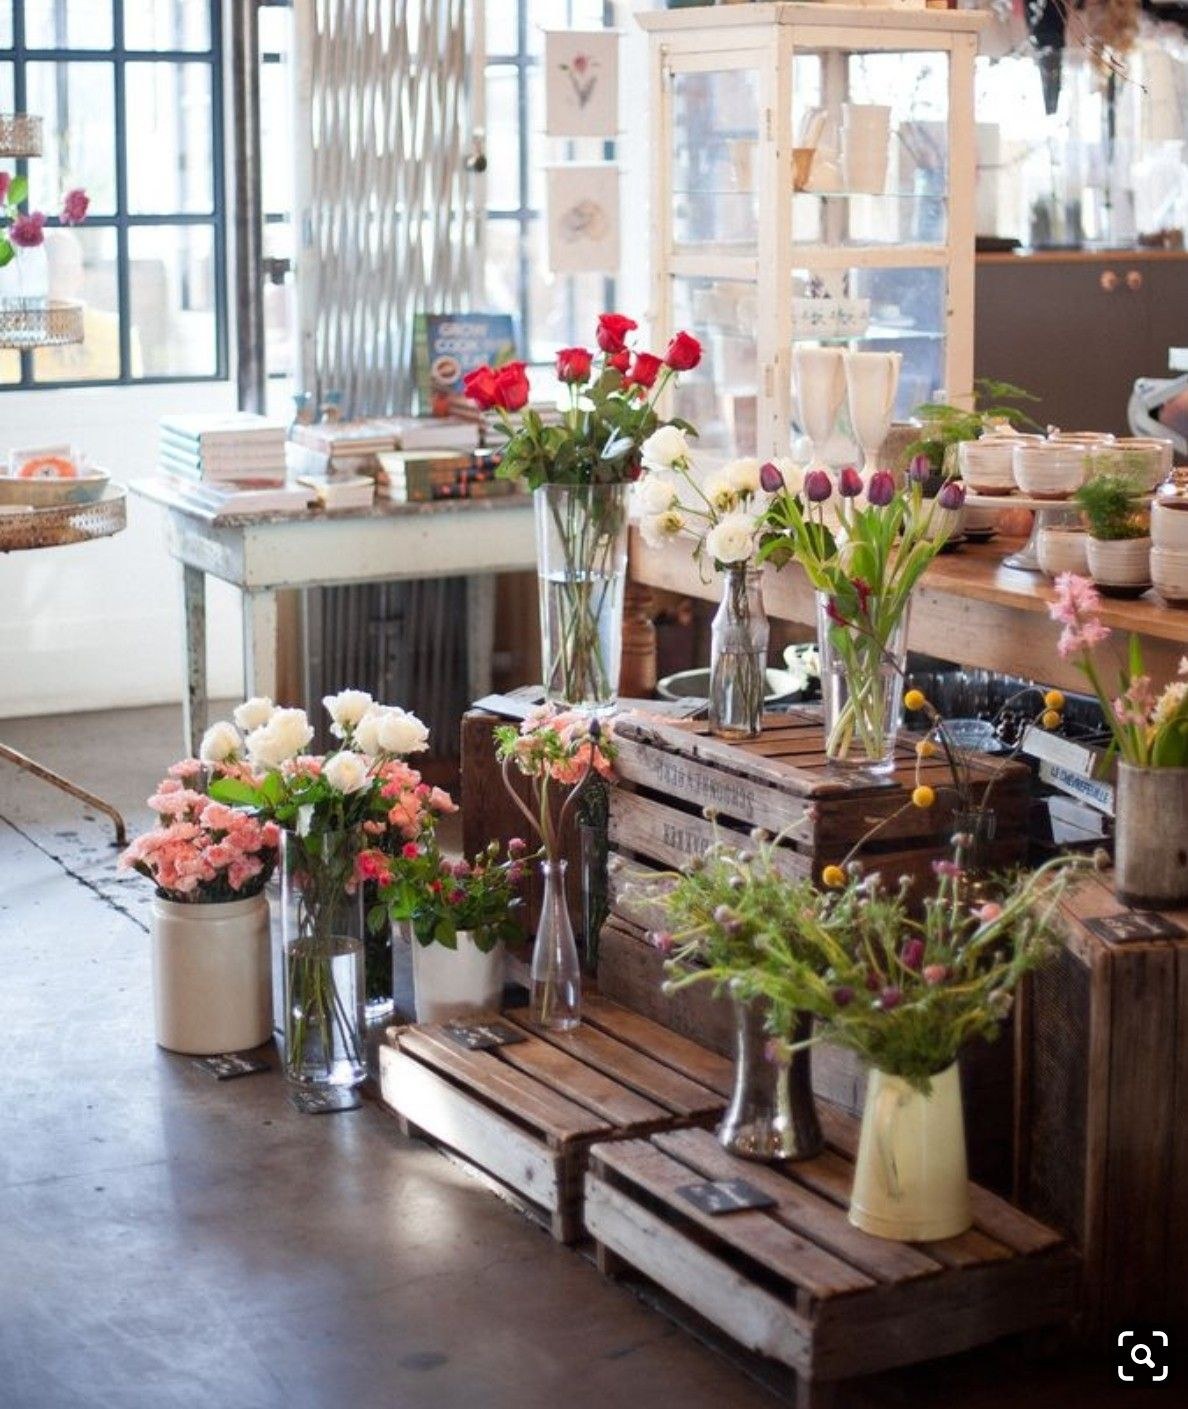 My flower shop. Салон цветов интерьер. Интерьер магазина цветов. Интерьер цветочного магазина. Цветочный магазин в стиле лофт.